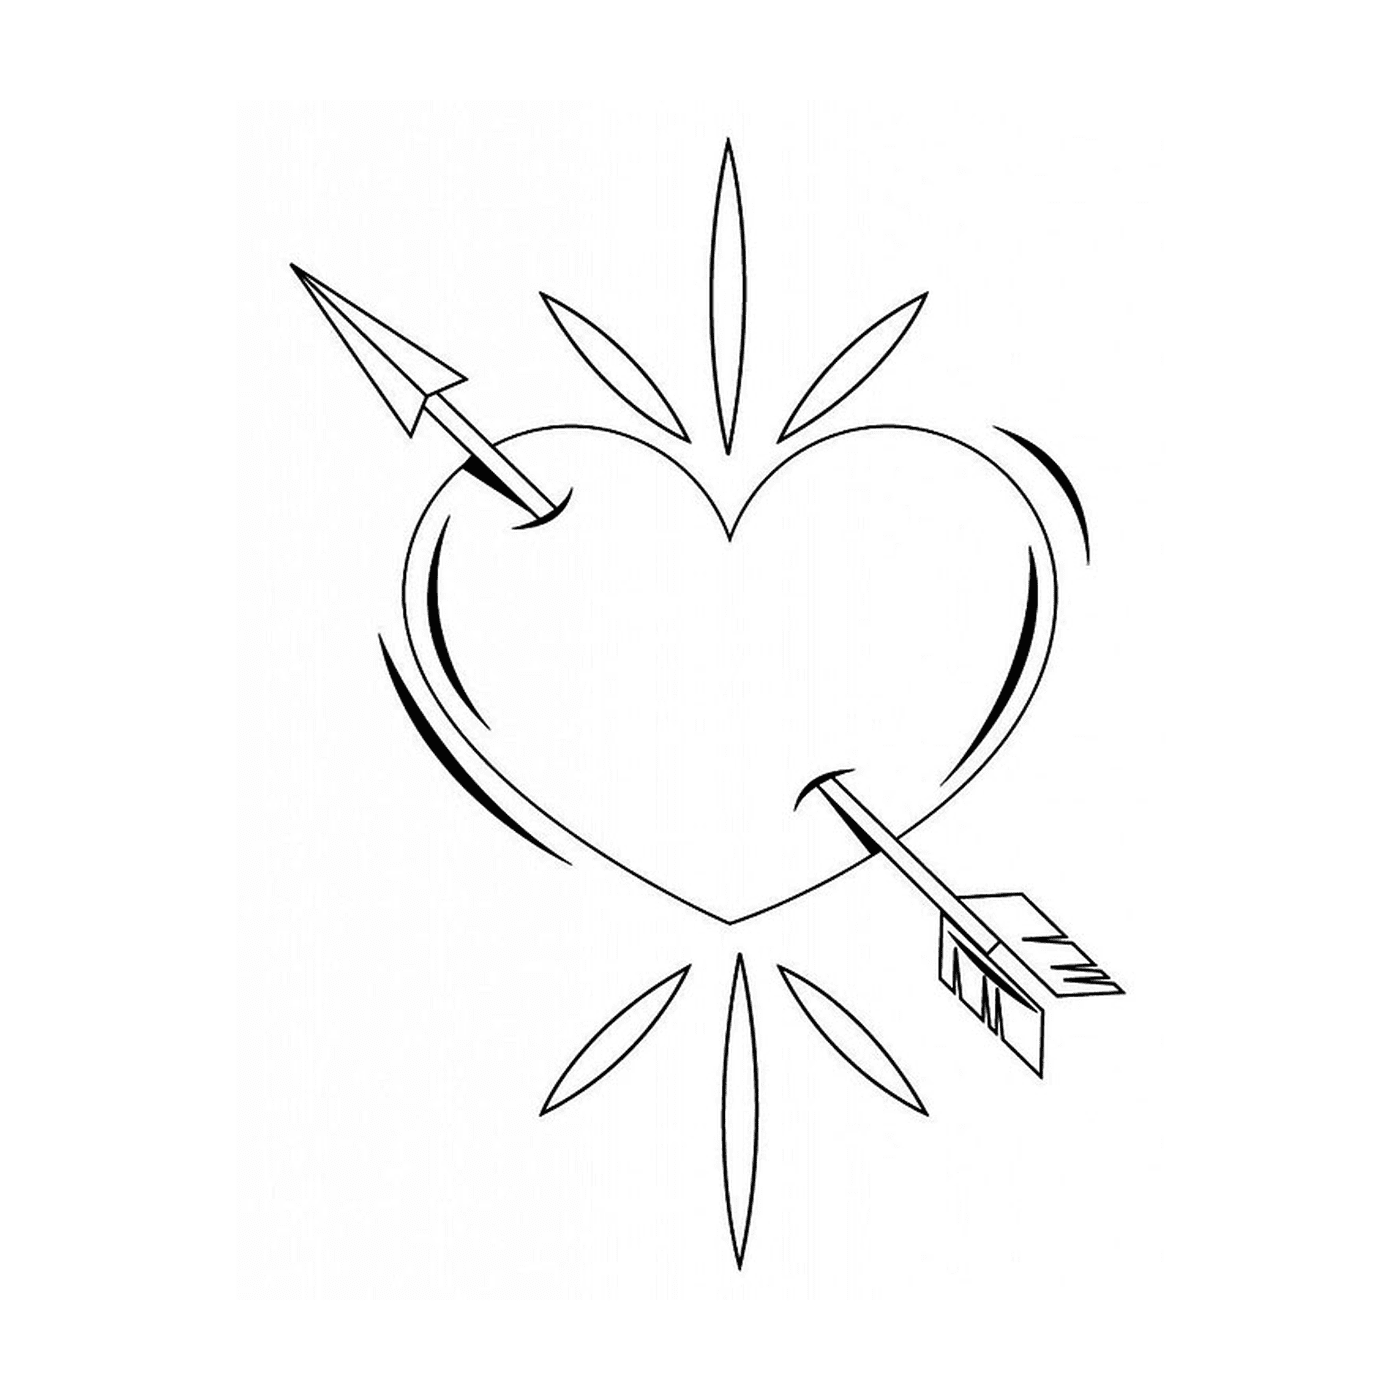  A heart pierced by an arrow drawn in black ink 